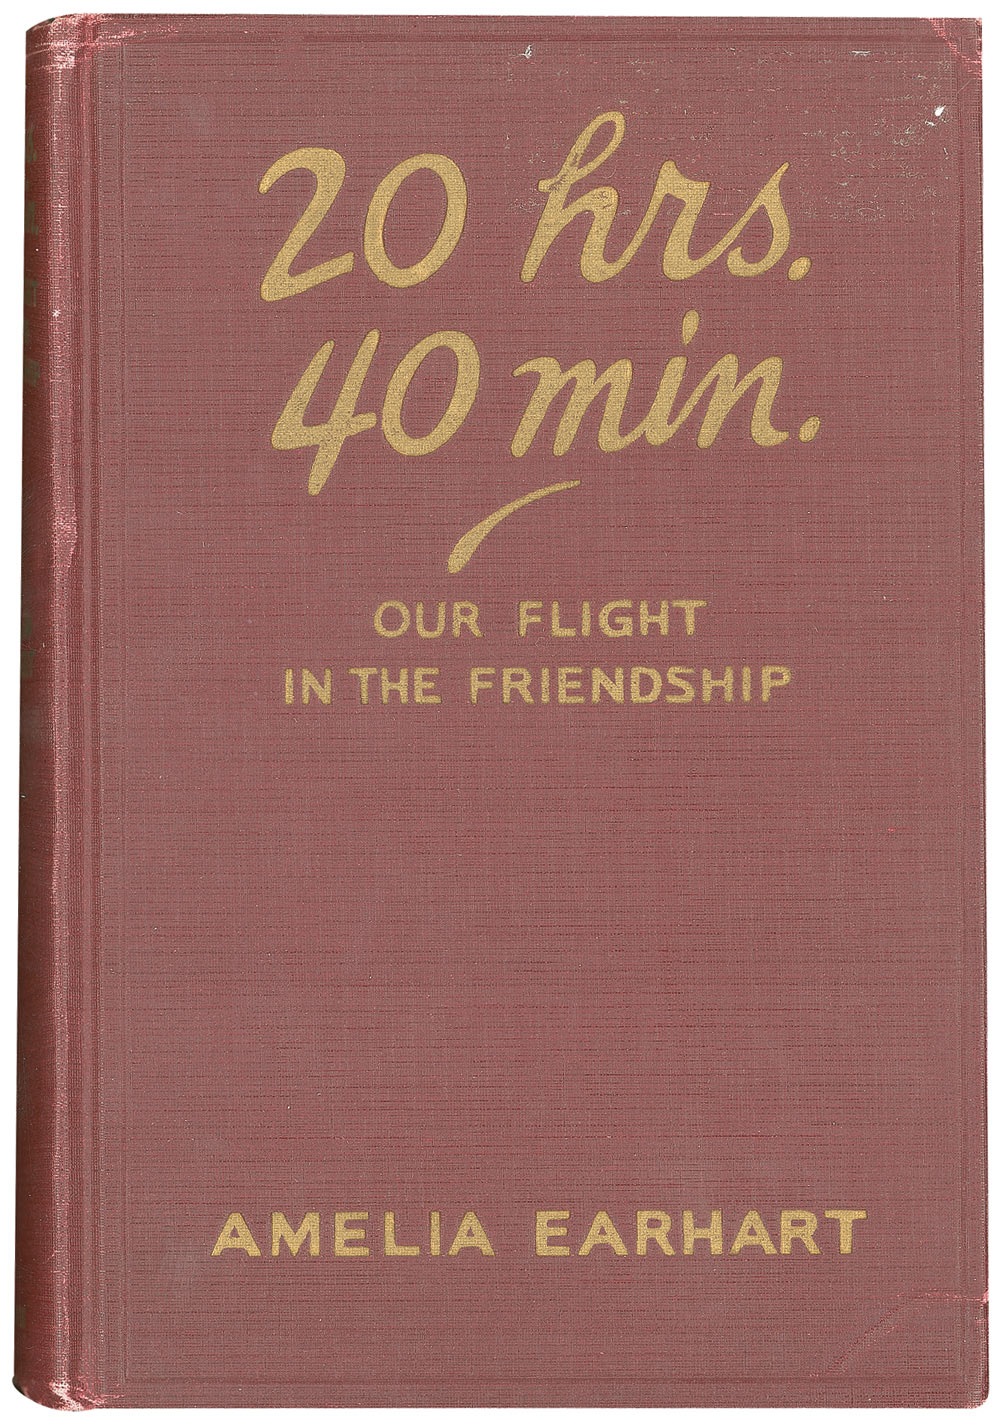 Lot #547 Amelia Earhart